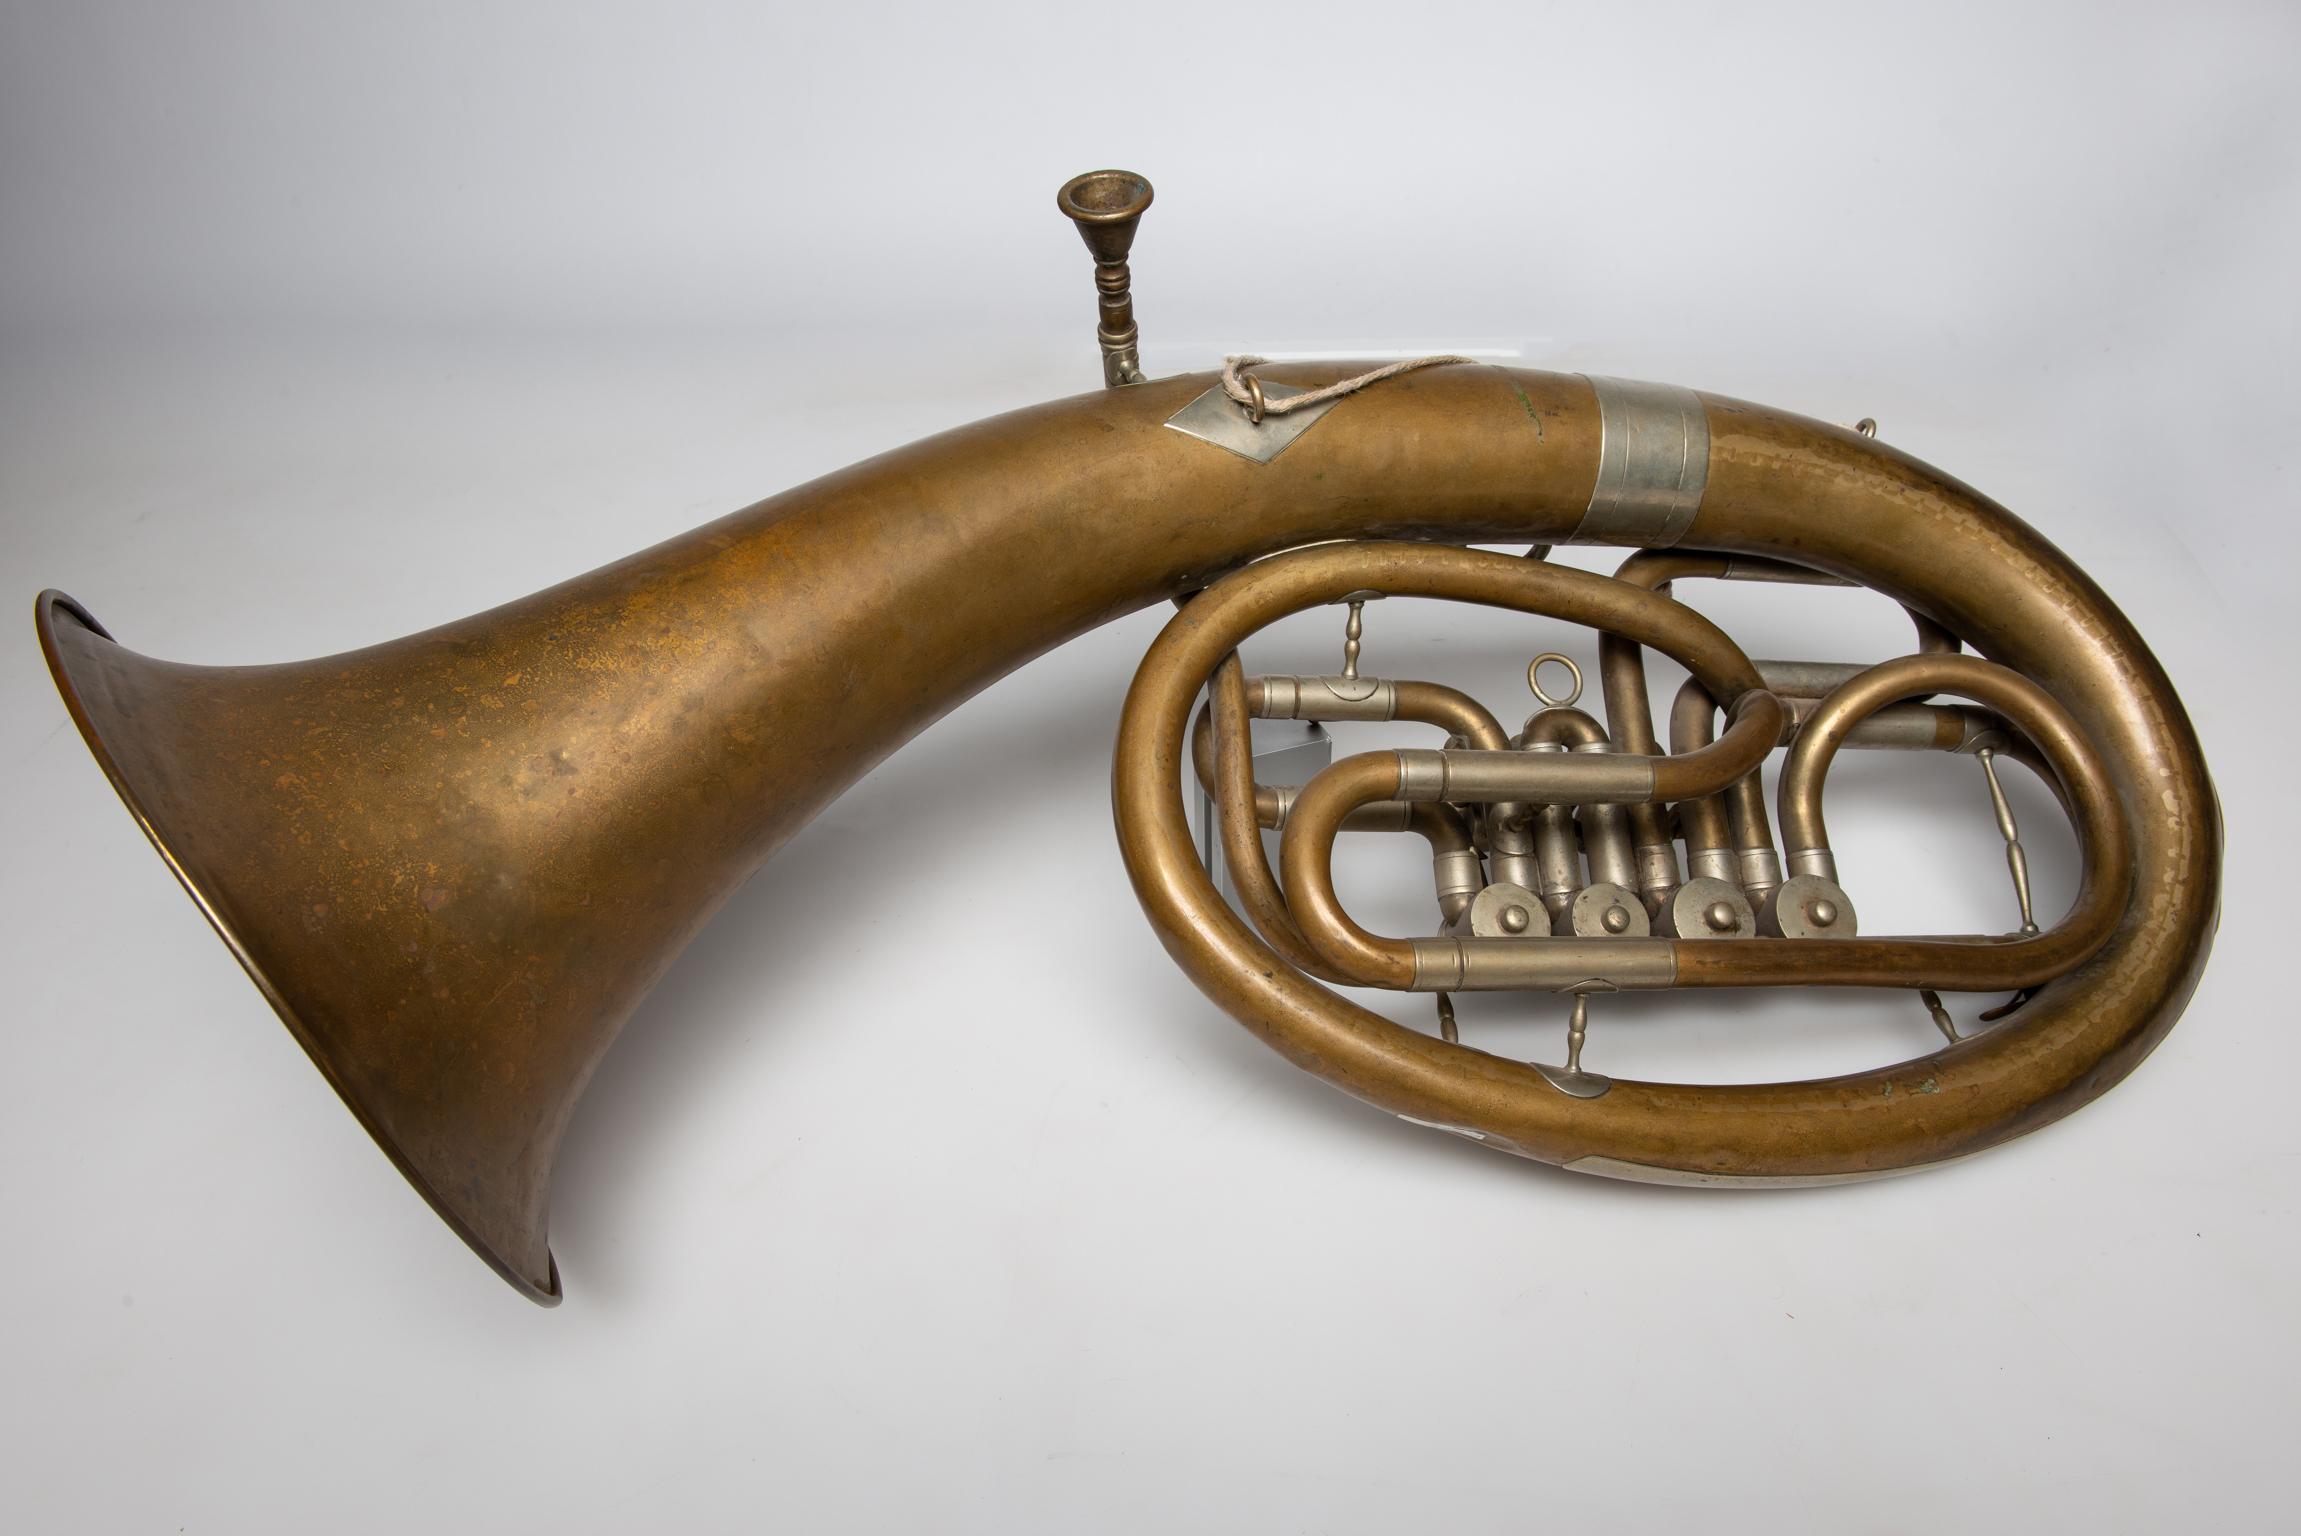 Bugle ténor à 4 cylindres - Ce bugle ténor a été fabriqué par V.I.I. Cerveny & S. - Hradec . Kralove - La société a été créée en 1842 à Hradeh Kralove, en République tchèque. C'est Cerveny qui, en 1846, a conçu le système de soupapes rotatives pour